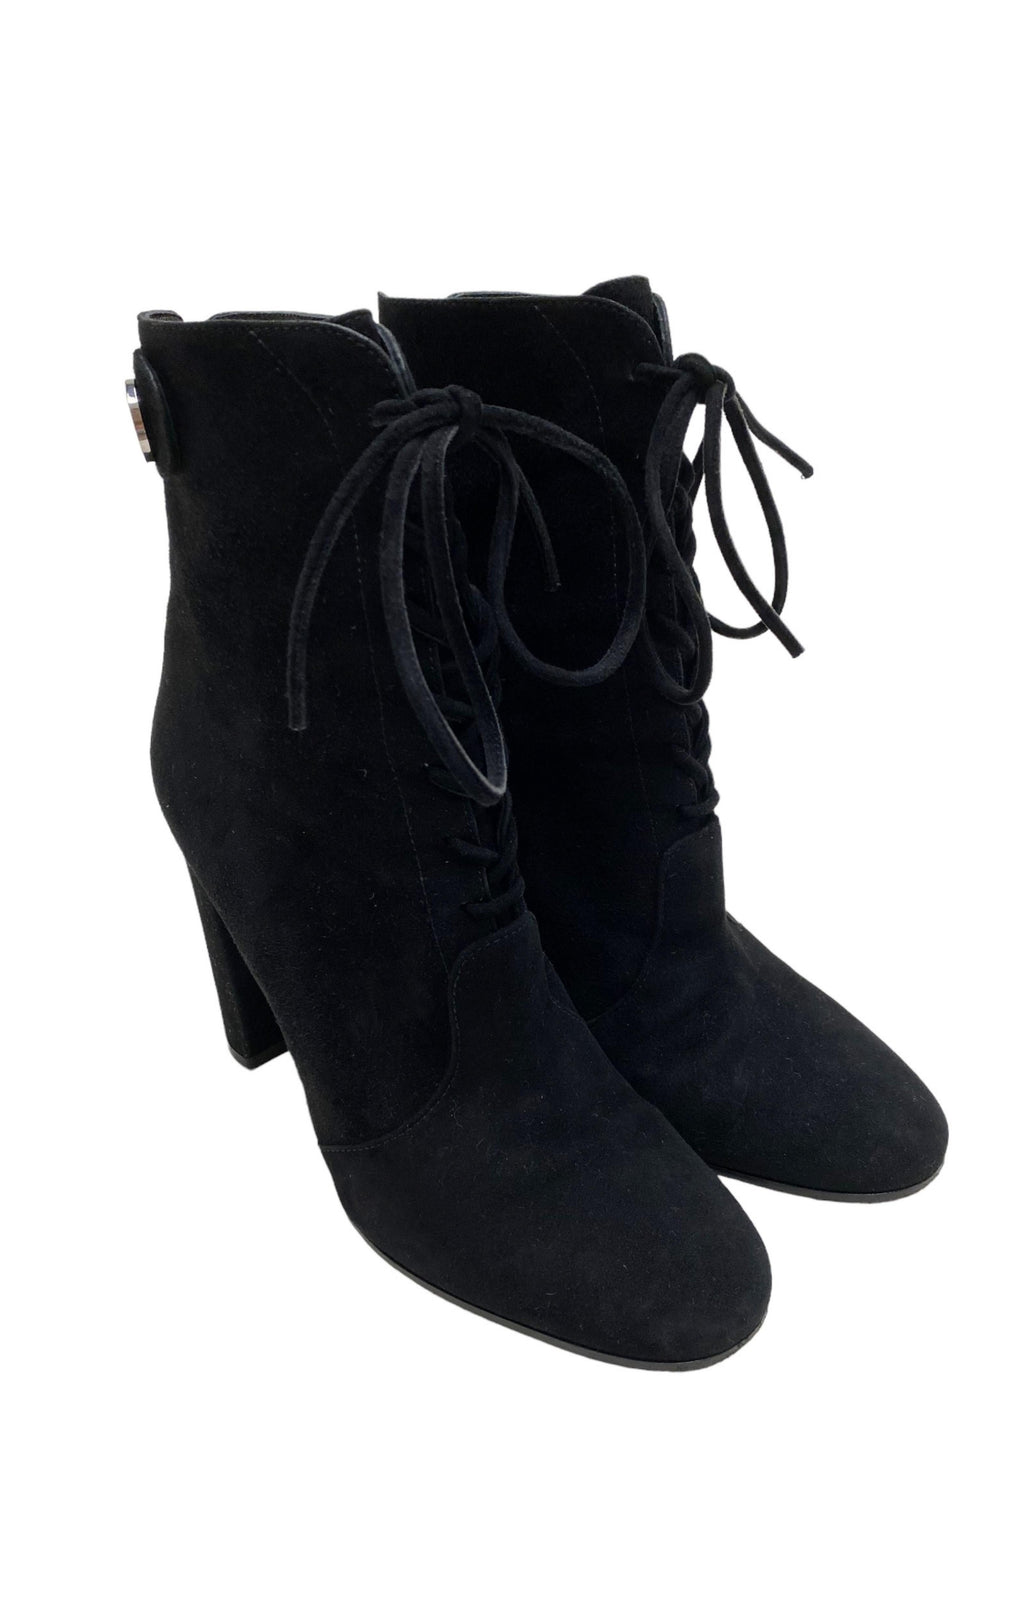 GIANVITO ROSSI (RARE) Boots Size: EUR 38.5 / US 7.5-8